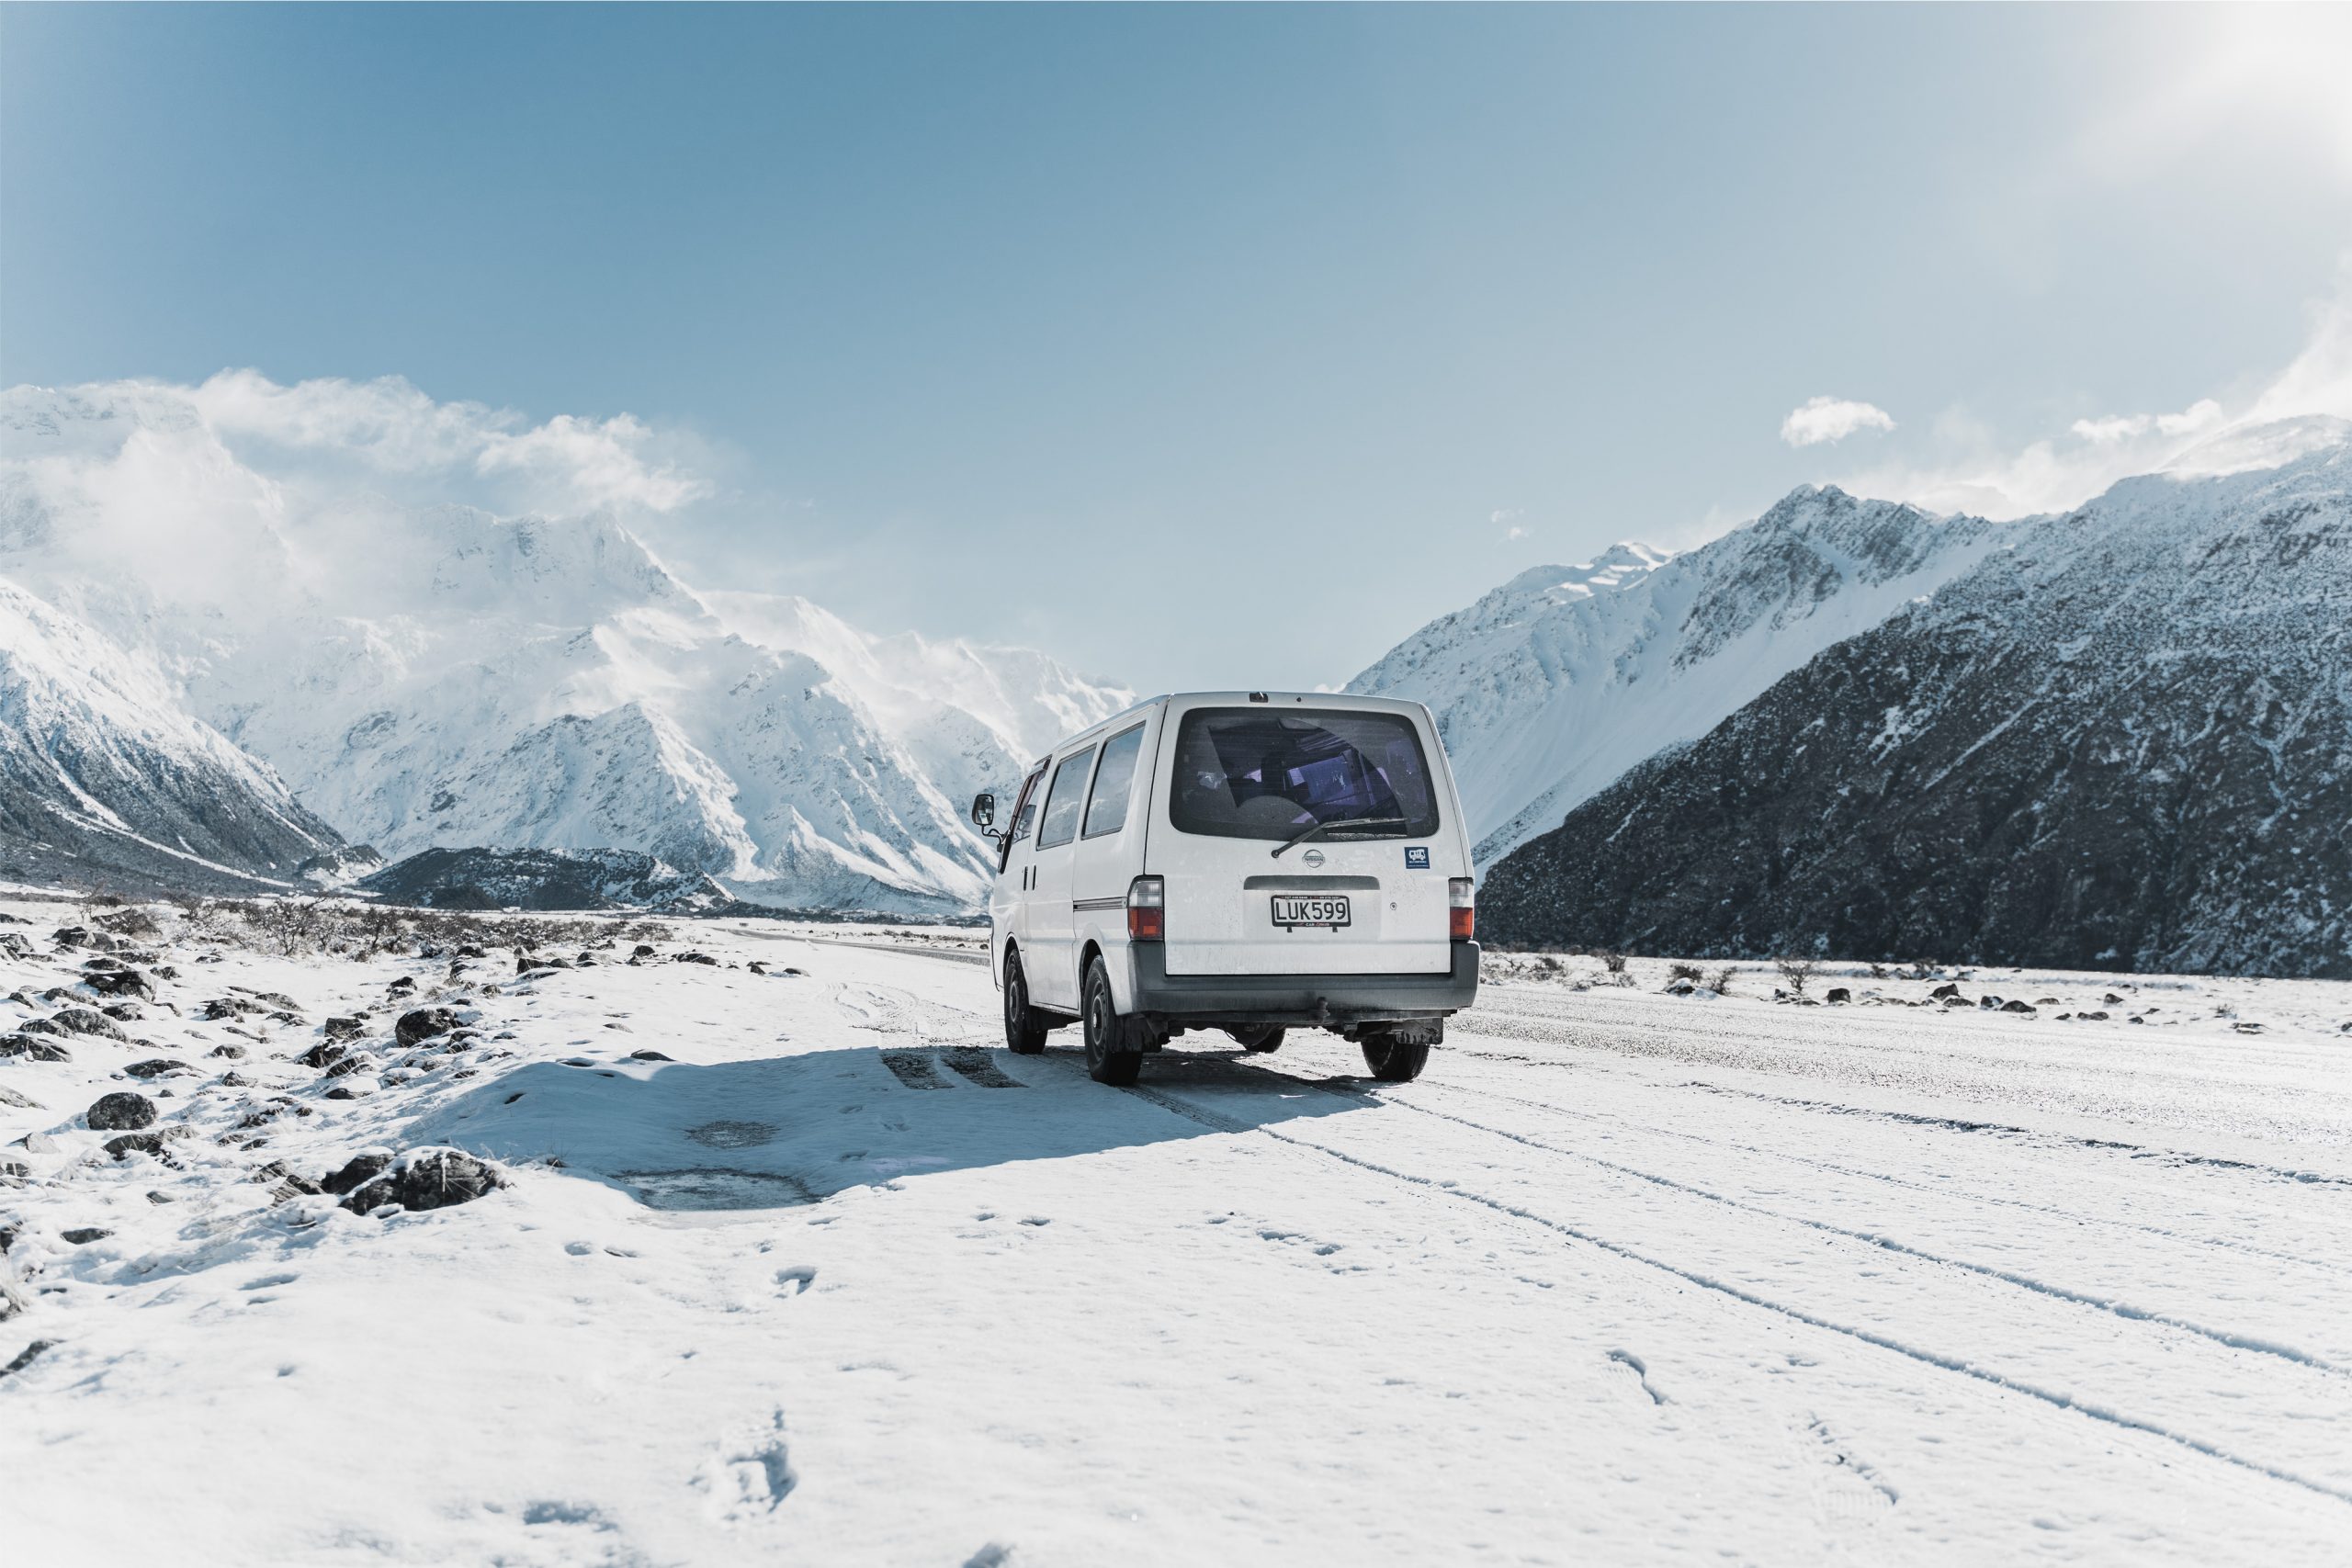 van in the snow